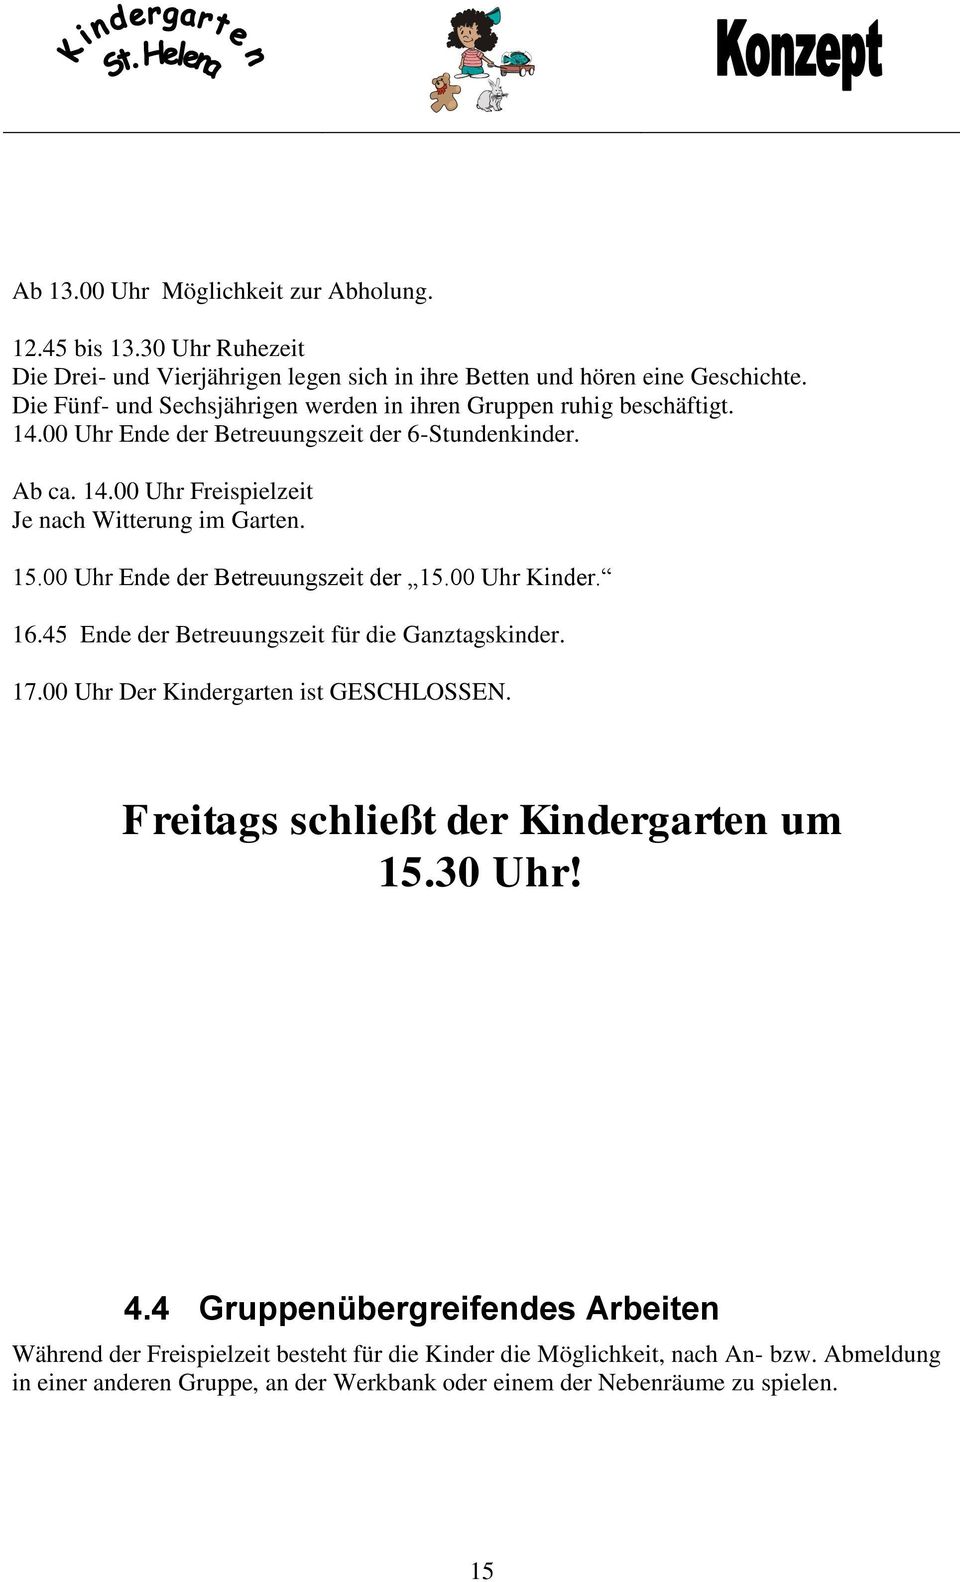 15.00 Uhr Ende der Betreuungszeit der 15.00 Uhr Kinder. 16.45 Ende der Betreuungszeit für die Ganztagskinder. 17.00 Uhr Der Kindergarten ist GESCHLOSSEN.